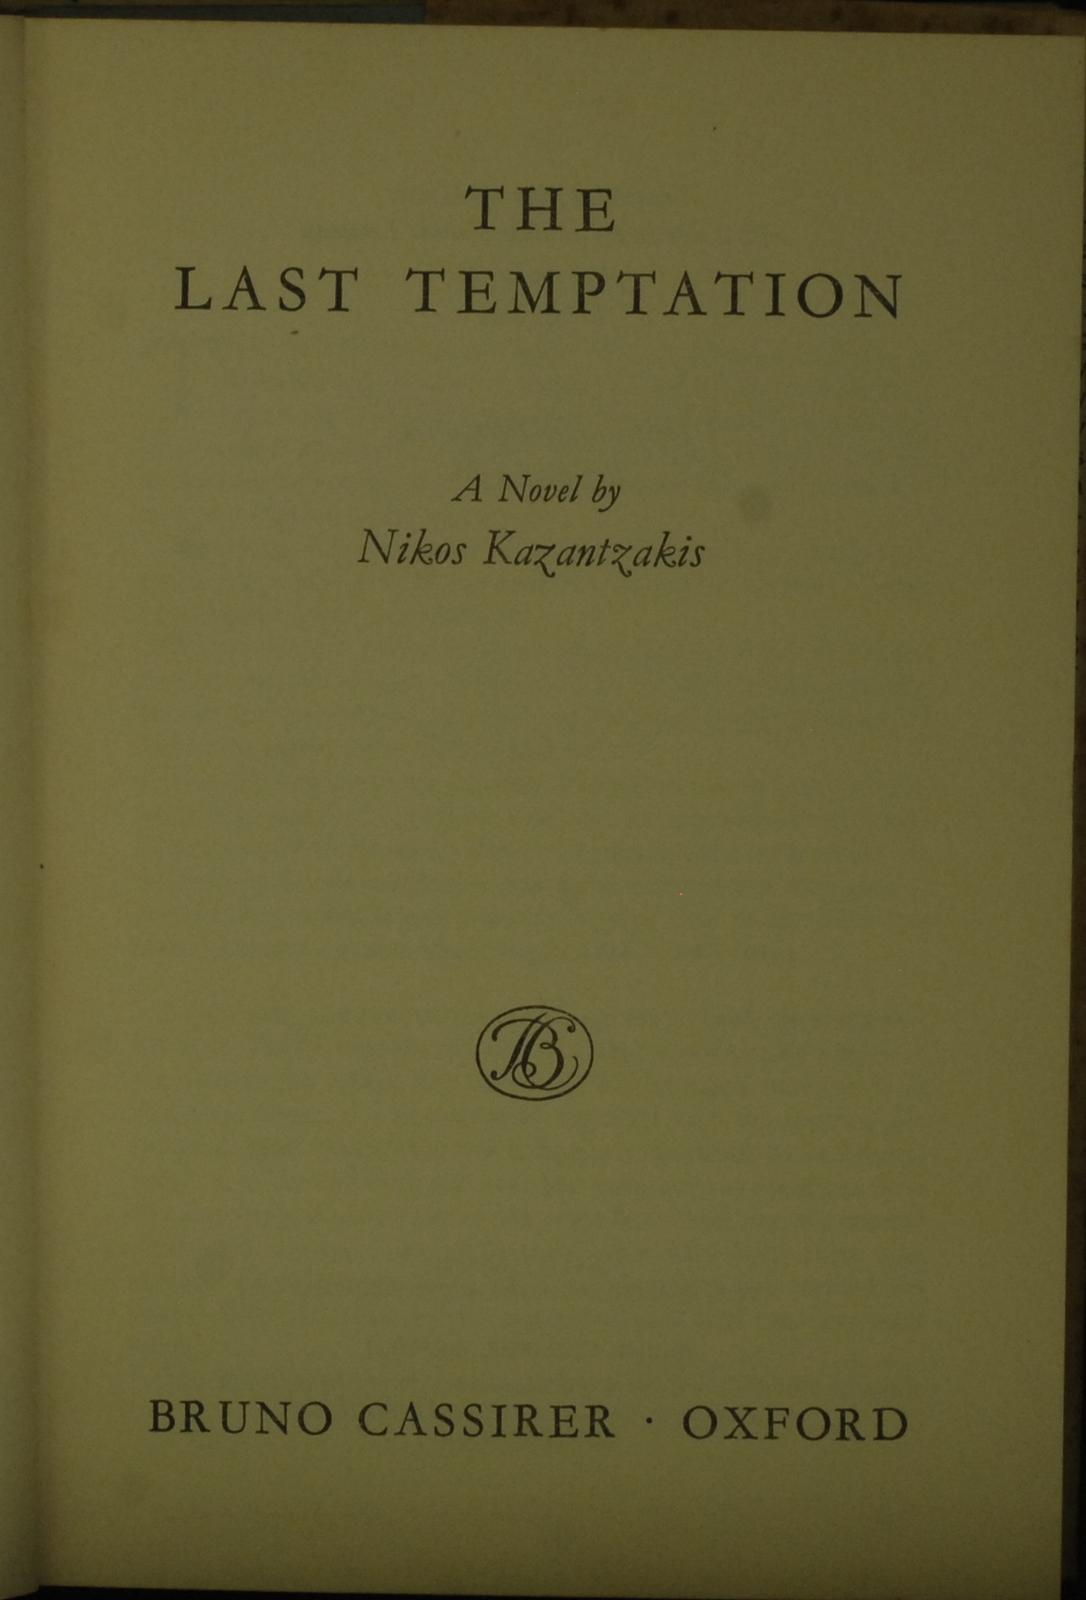 mbb006725d_-_Kazantzakis_Nikos_-_The_Last_Temptation.jpg